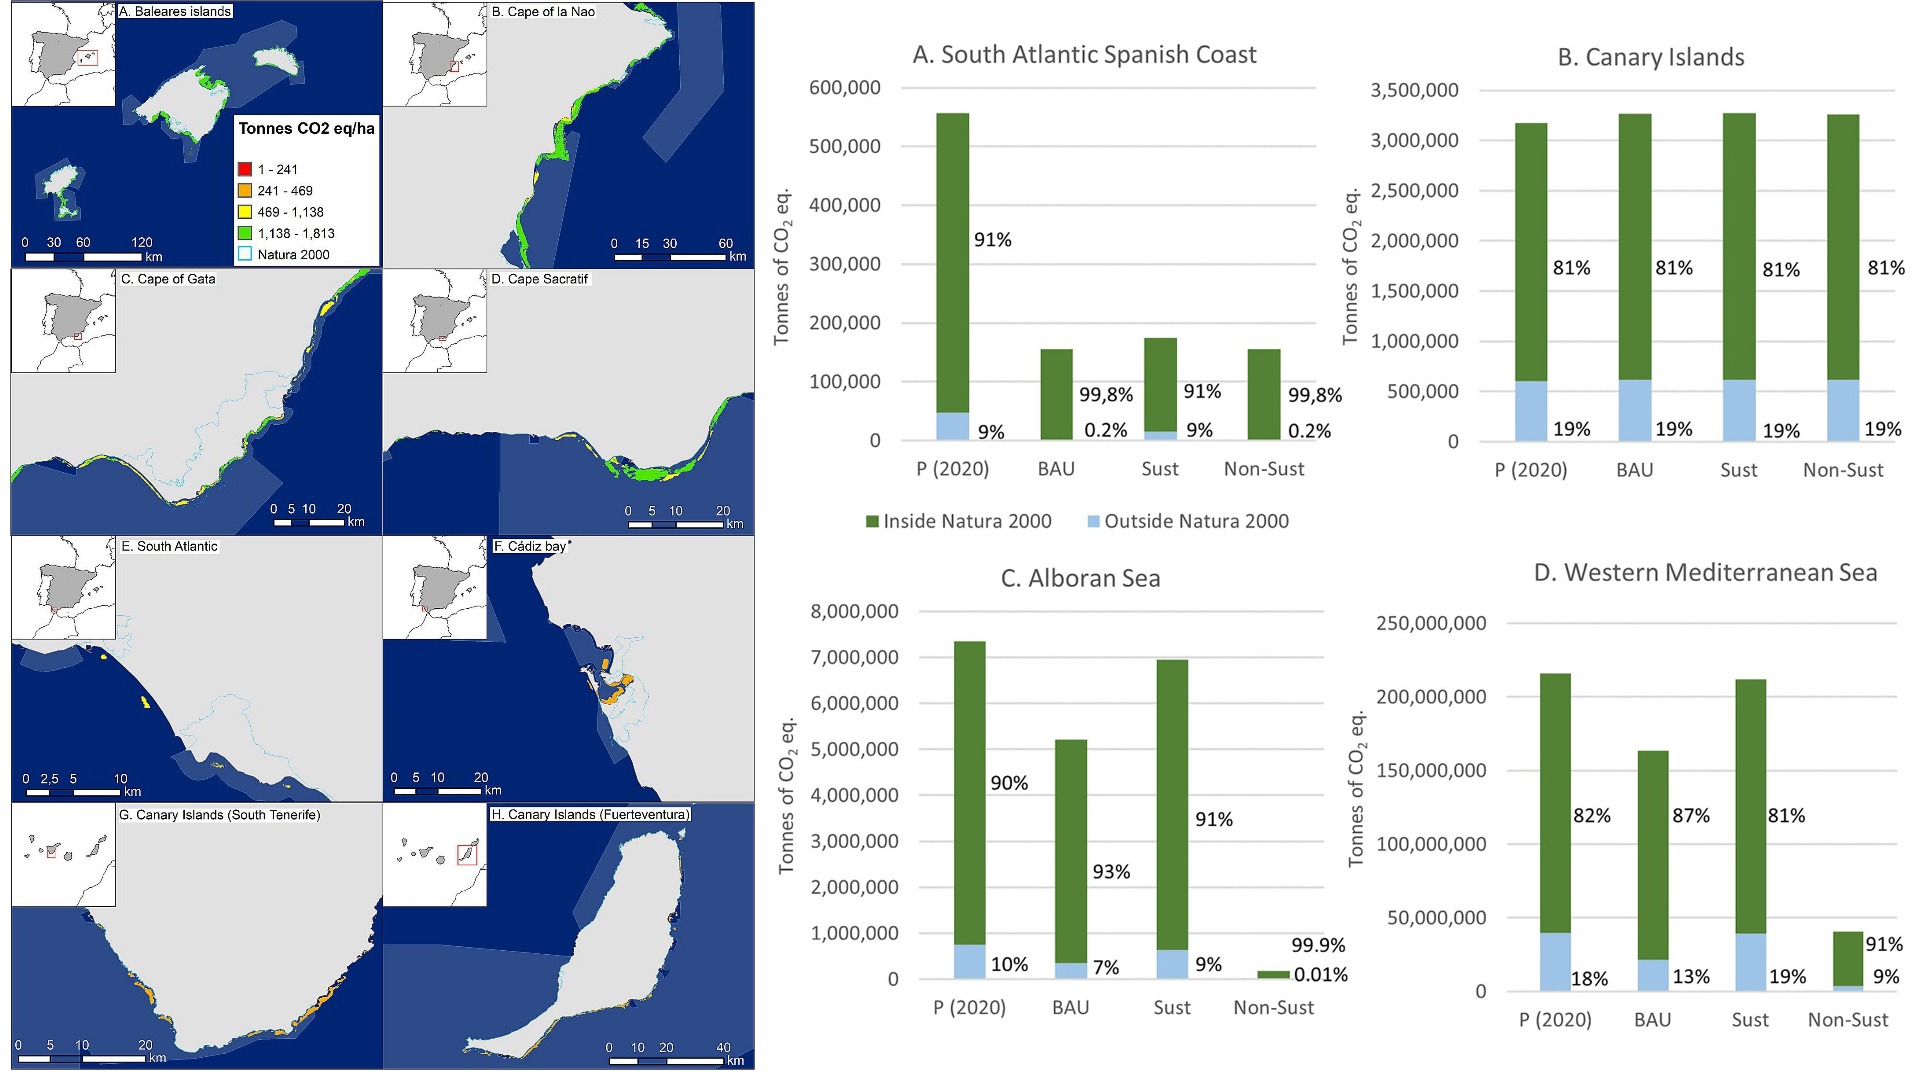 Imágenes que representan espacialmente el modelo de carbono azul costero en España y los cambios modelados en carbono azul costero bajo tres escenarios de futuro 